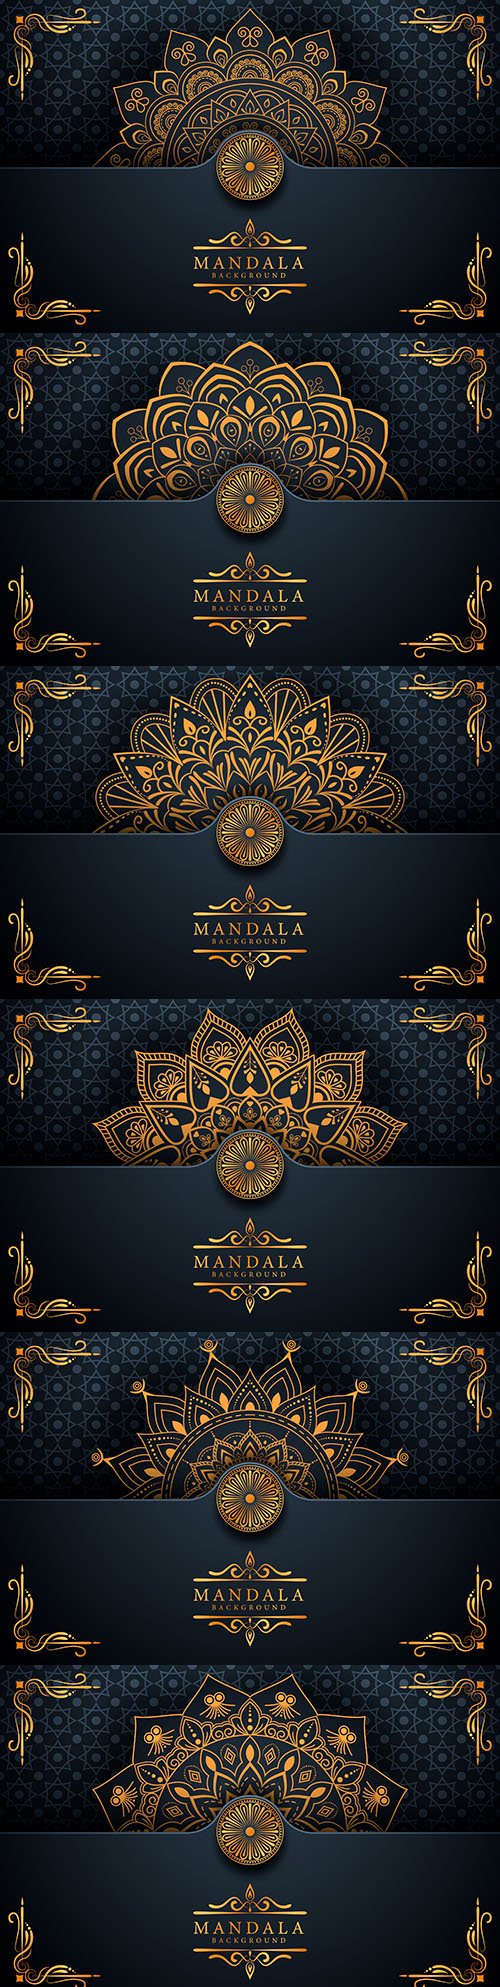 Creative luxury king mandala decorative background